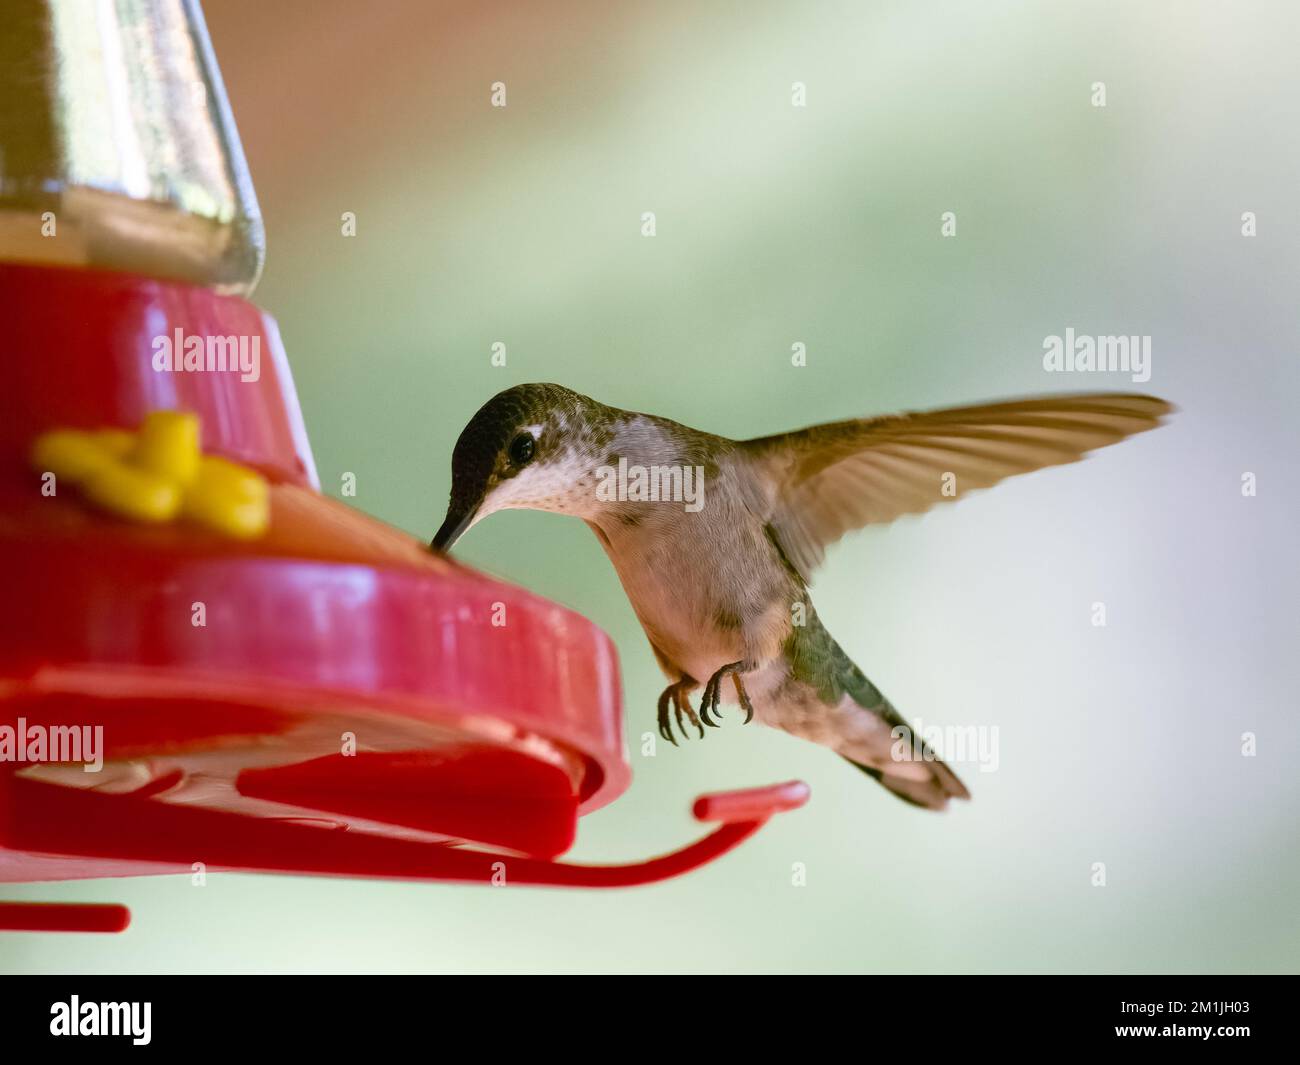 Nahaufnahme eines unreifen männlichen rubinkehlenden Kolibris, der sich an einem roten Fütterungsort ernährt. Das Bild hat eine geringe Schärfentiefe und einen geringen Kopierraum. Stockfoto